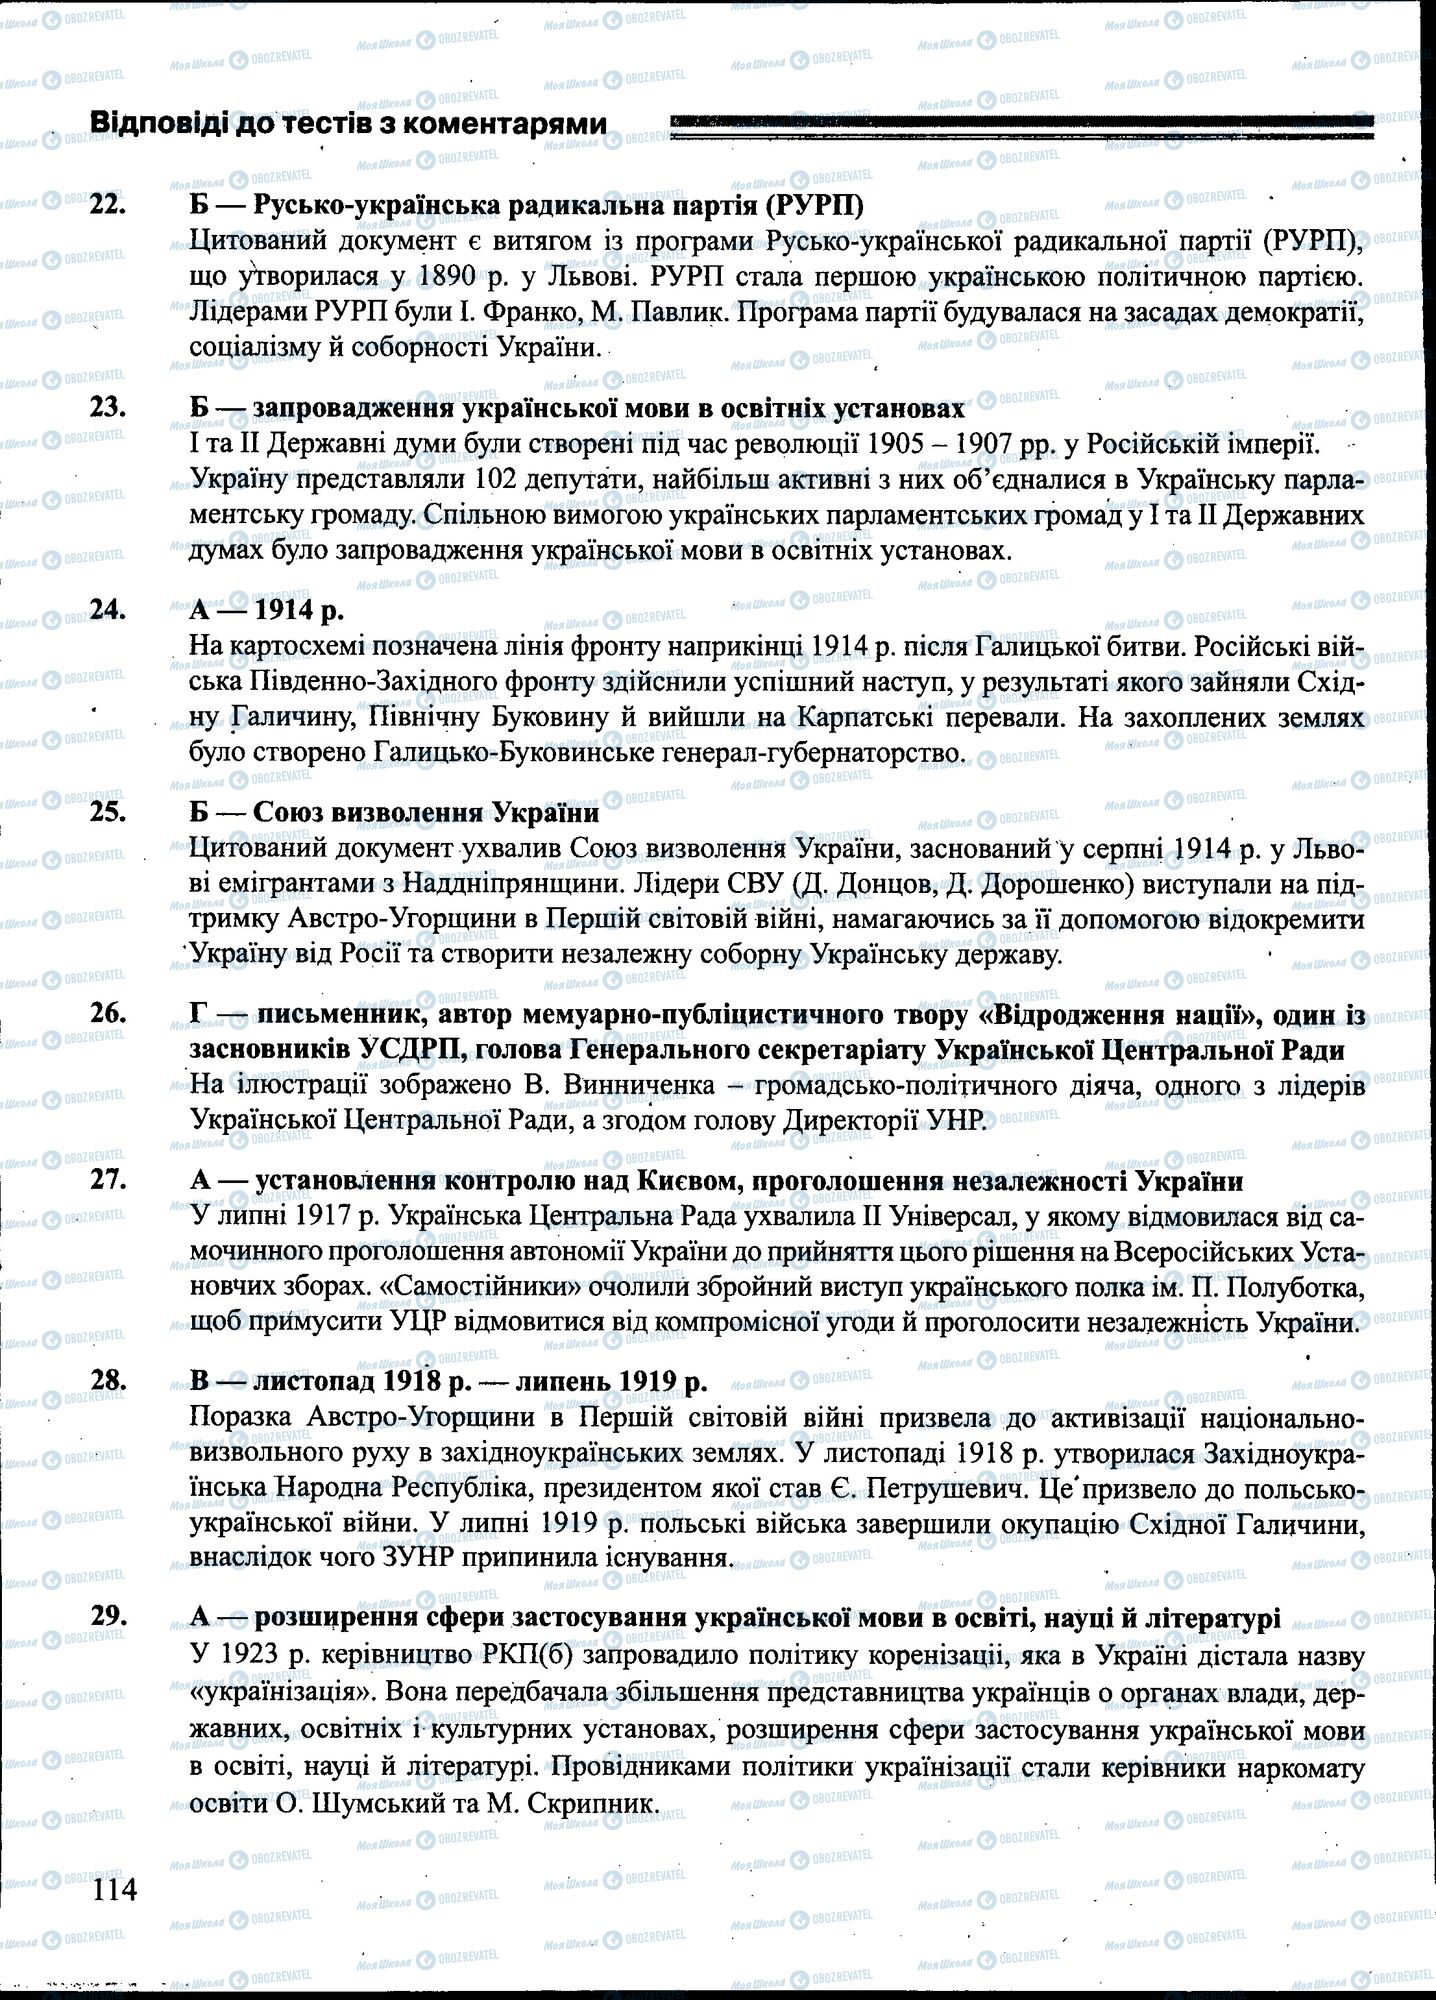 ЗНО История Украины 11 класс страница 114